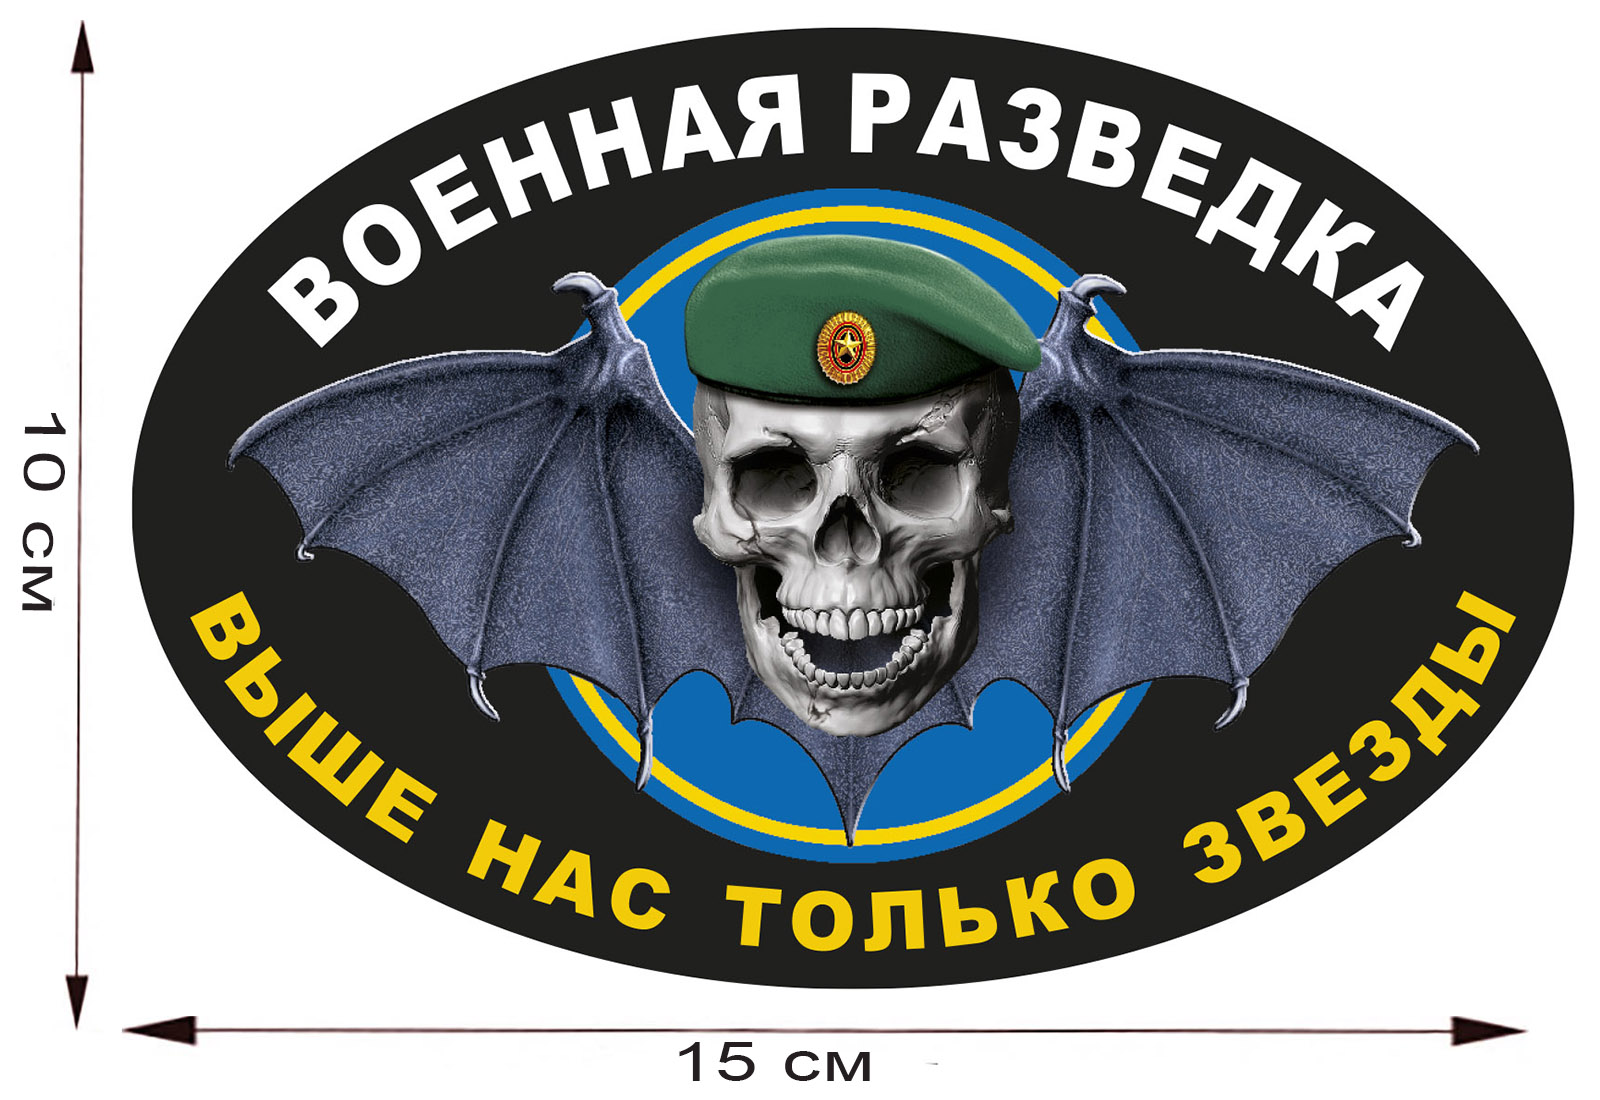 Автомобильная наклейка с символикой Военной разведки 